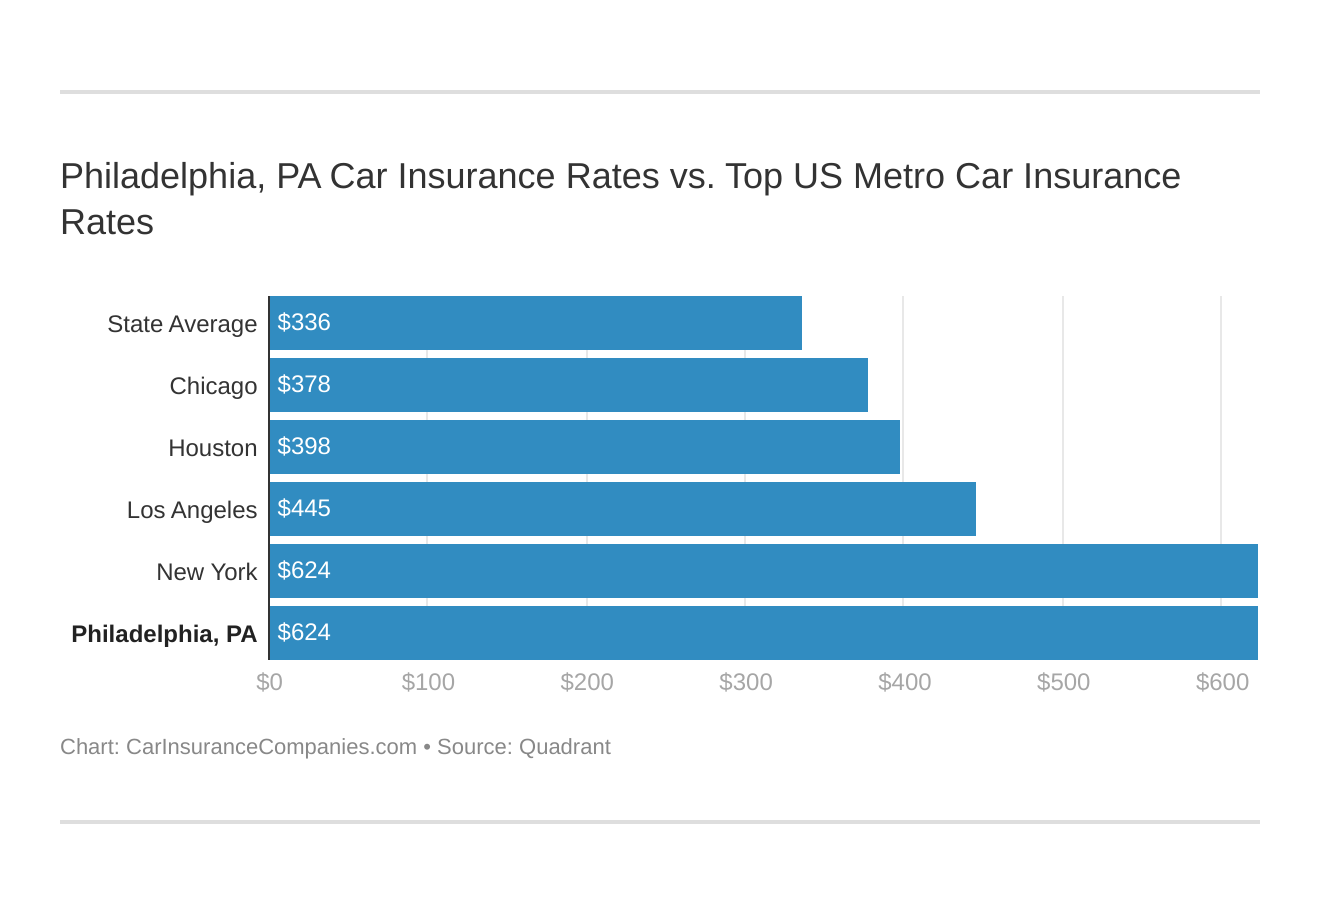 Philadelphia, PA Car Insurance Rates vs. Top US Metro Car Insurance Rates